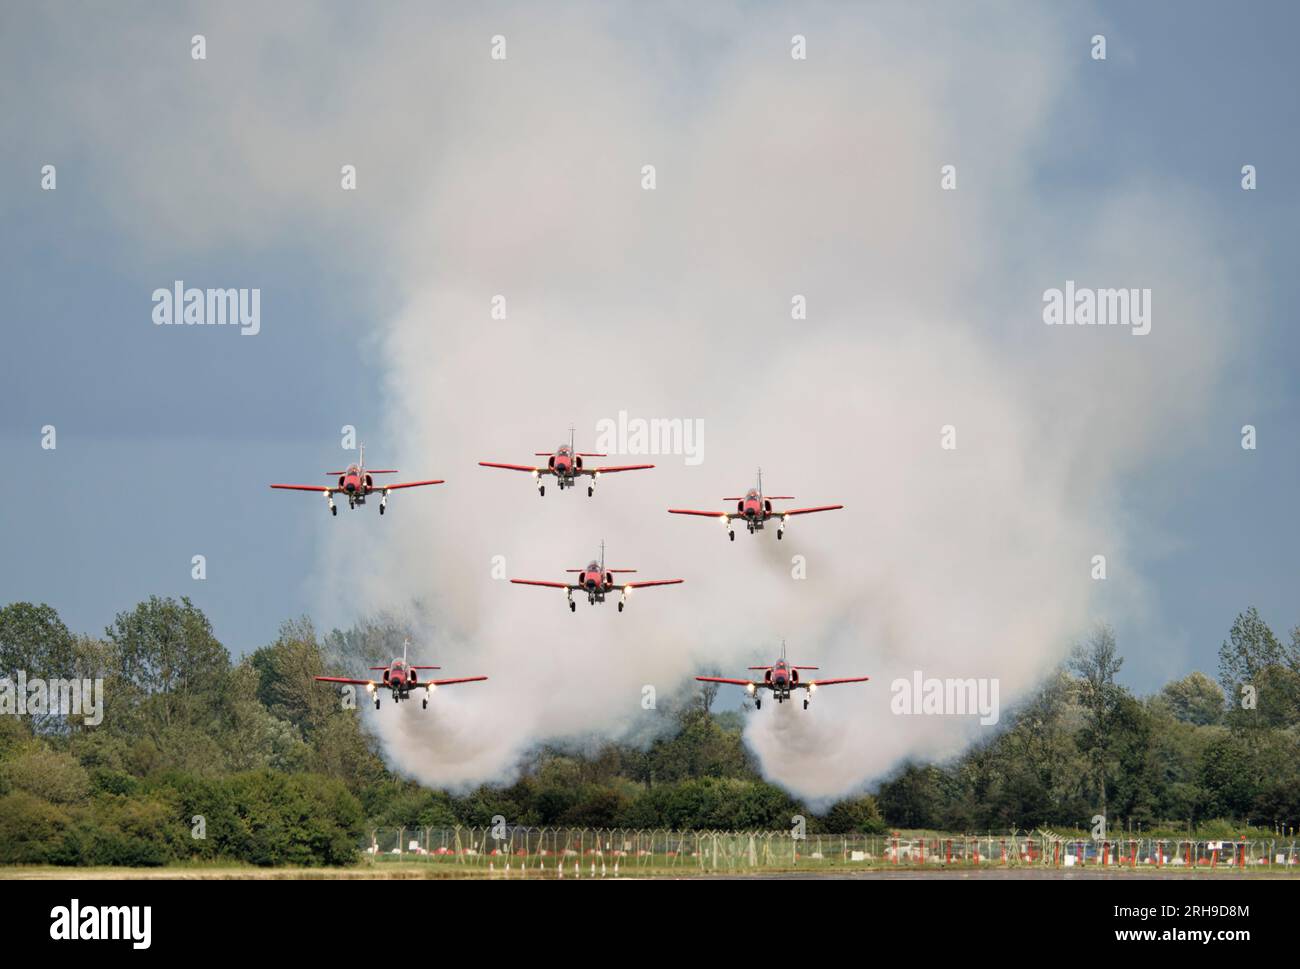 Das Aerobatic Display Team der spanischen Luftwaffe, die Patrulla Aguila, kommt nach ihrer hervorragenden Präsentation auf der RIAT zu einer gleichzeitigen Teamlandung Stockfoto